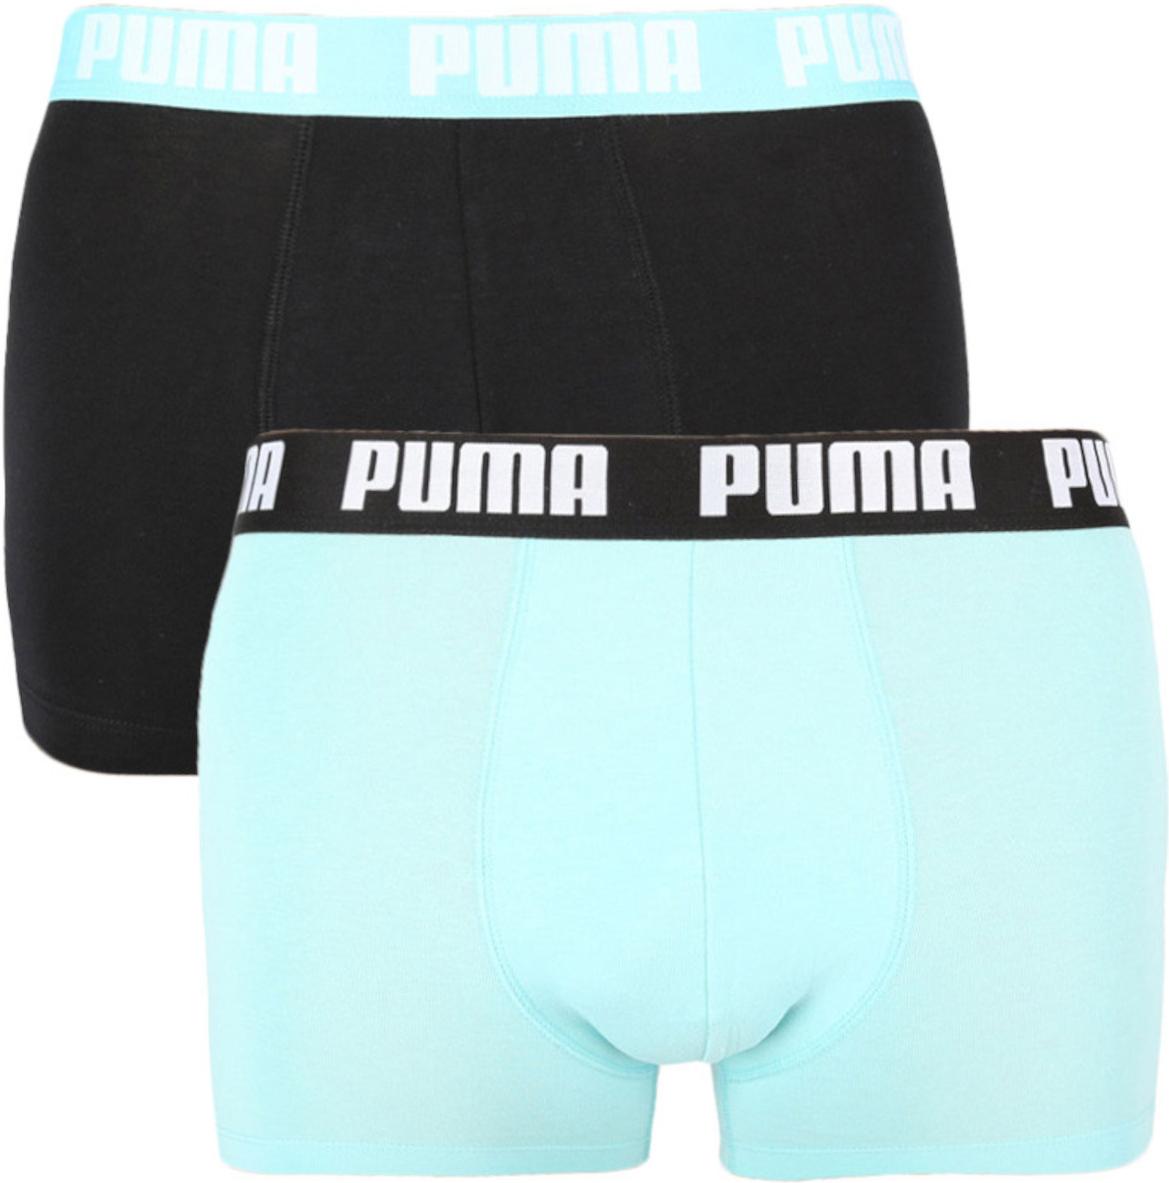 Pánské boxerky Puma Basic (2 kusy)